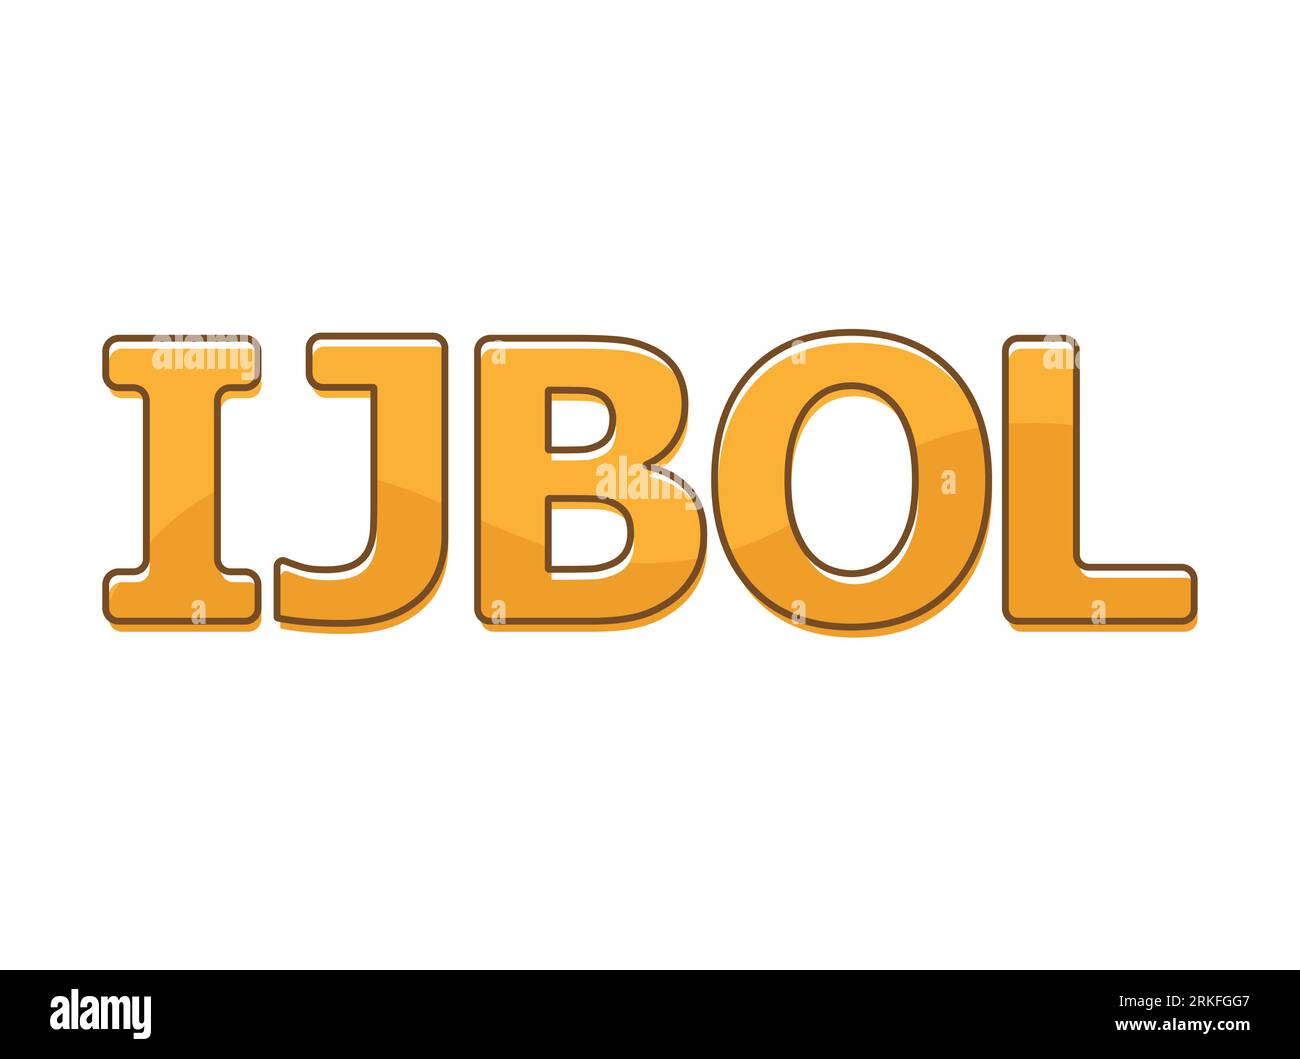 Gen Z cancels LOL in favor of new acronym: IJBOL